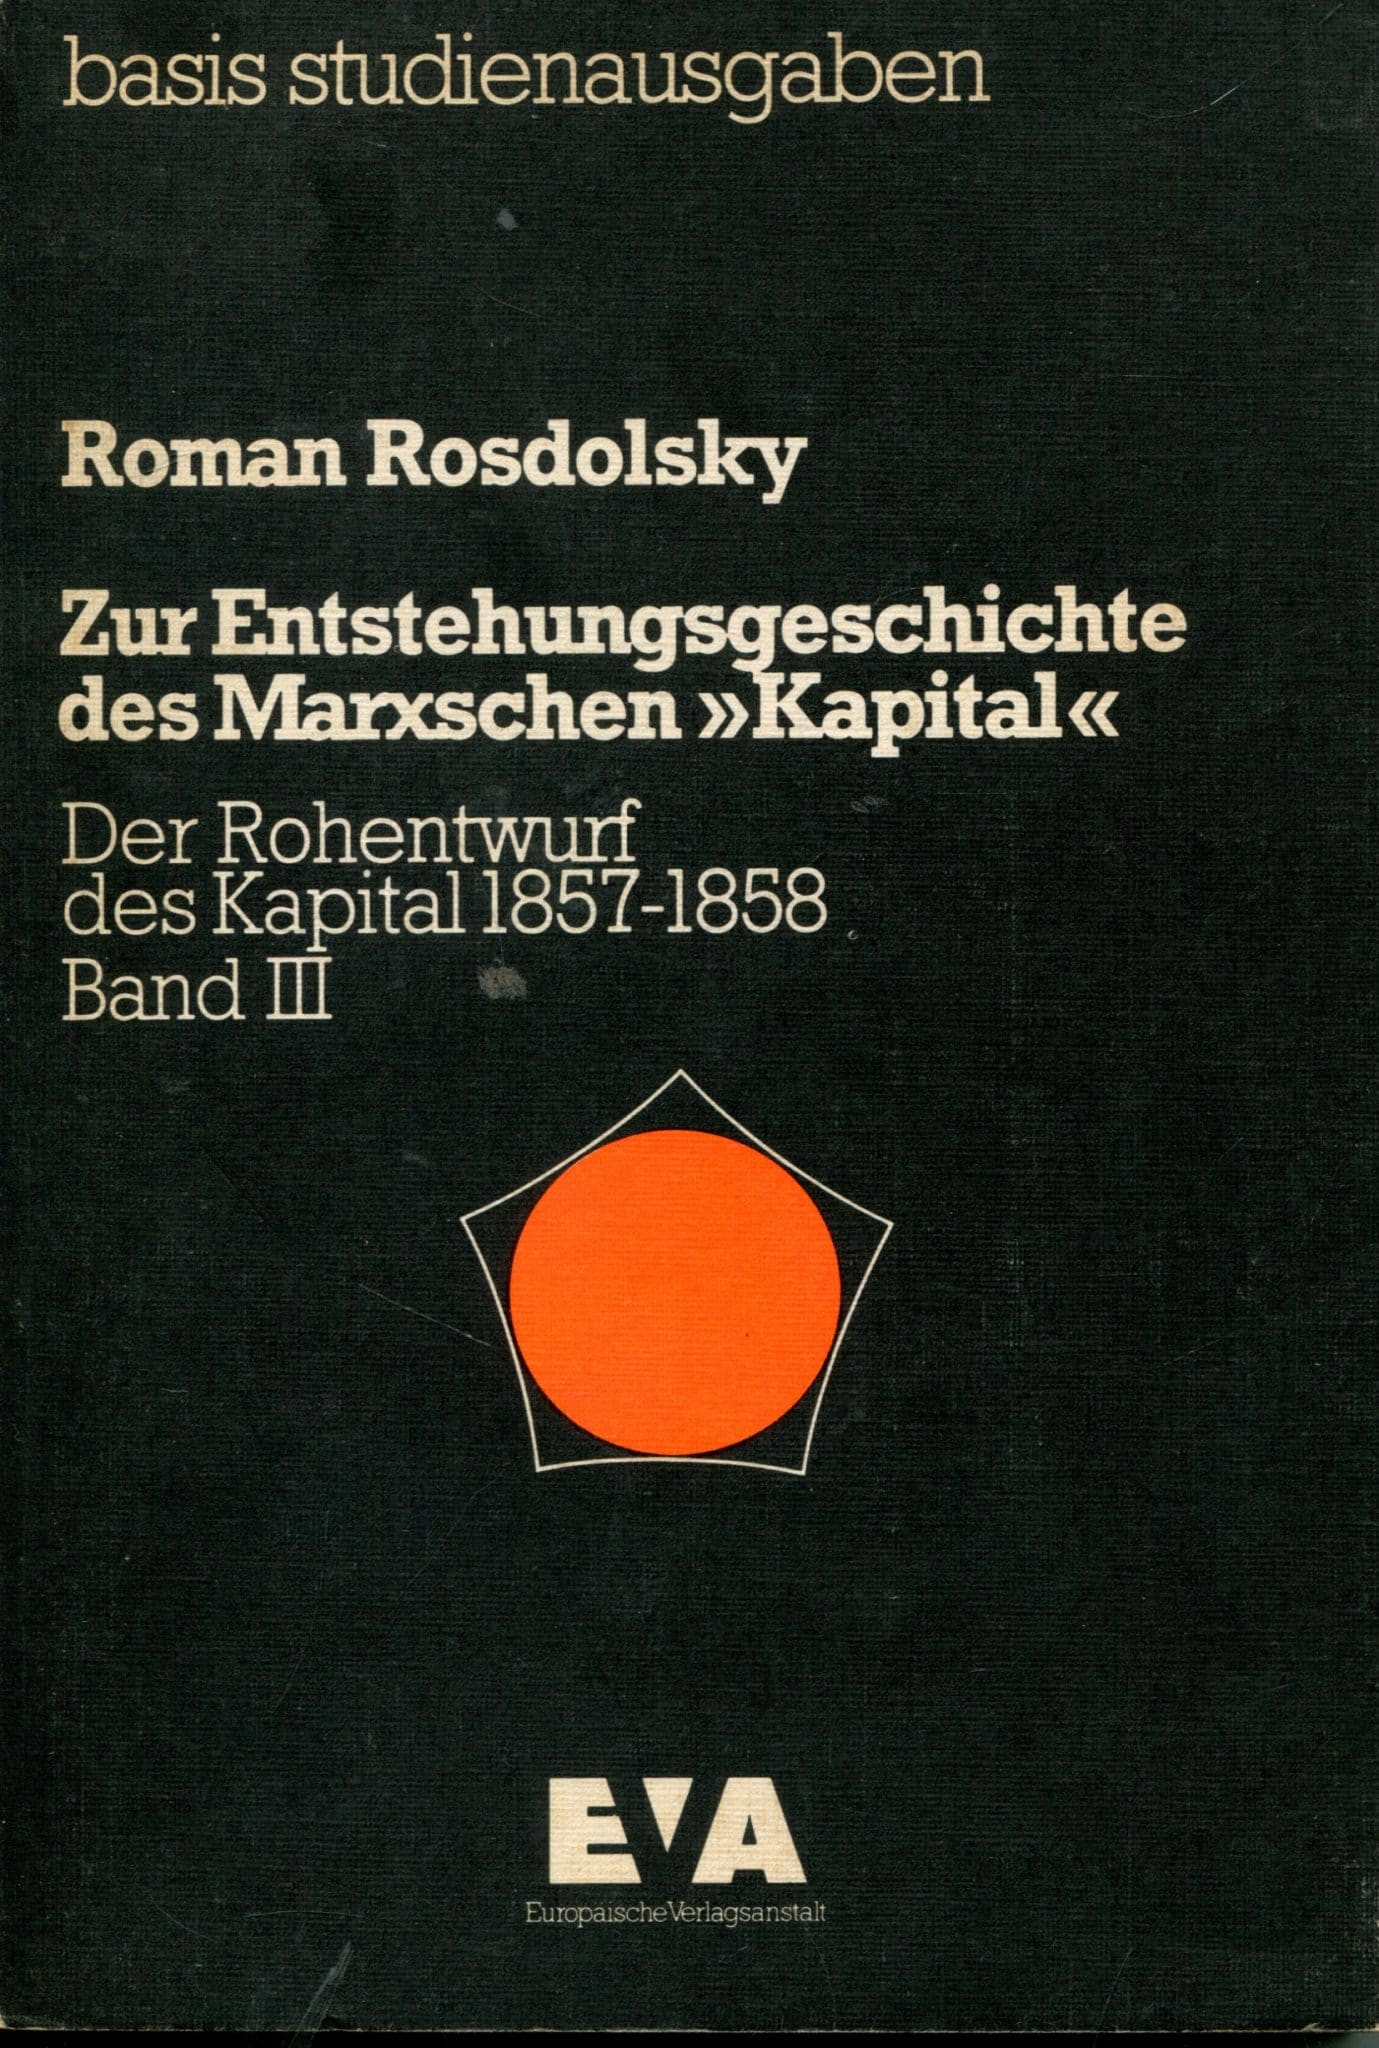 Zur Entstehungsgeschichte des Marxschen "Kapital" Roman Rosdolsky